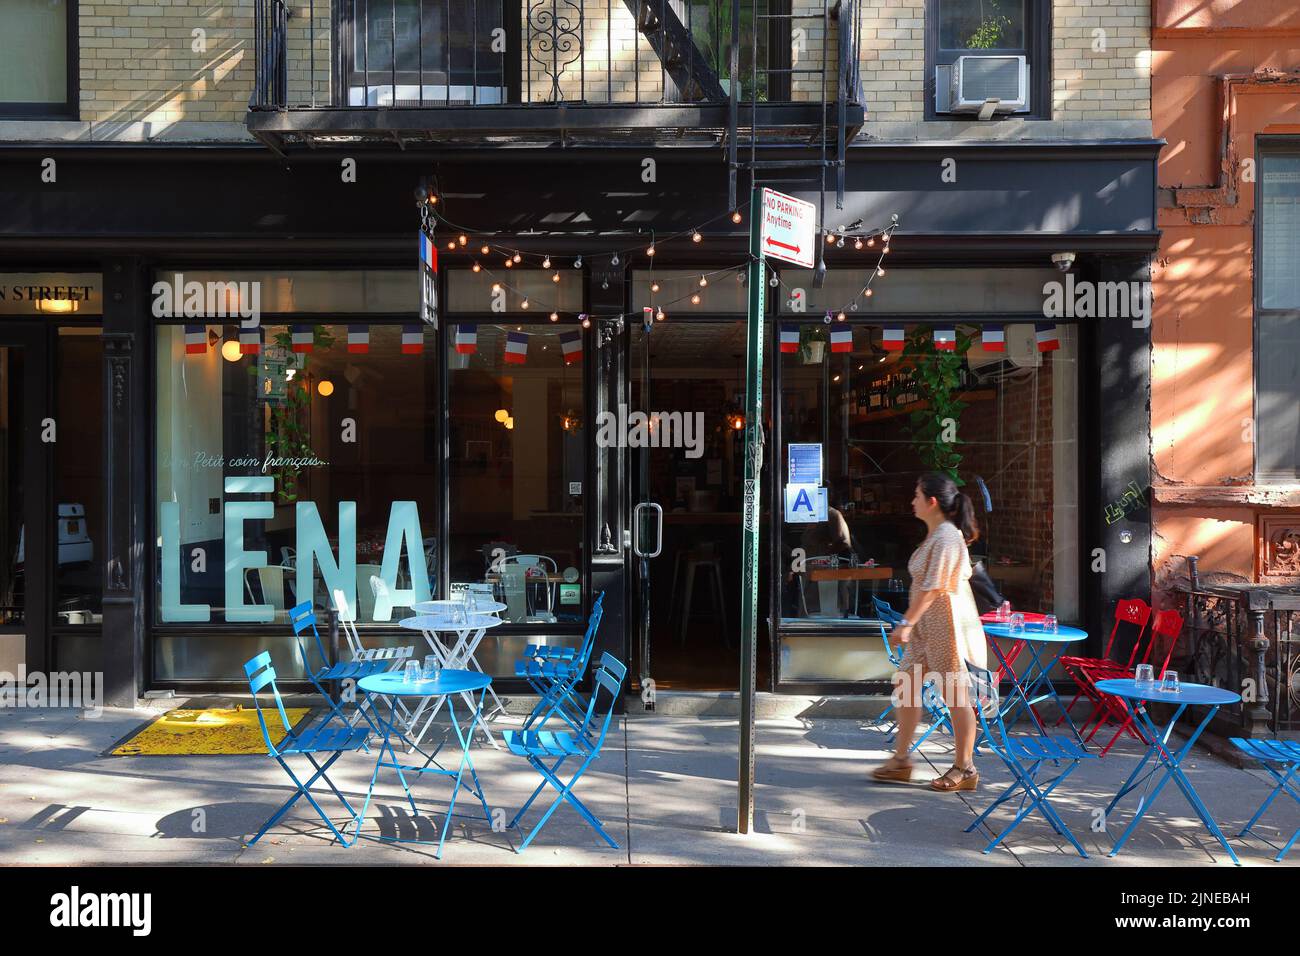 Lena, 10 Morton St, New York, NYC Foto von einem französischen Restaurant im Stadtteil Greenwich Village in Manhattan. Stockfoto